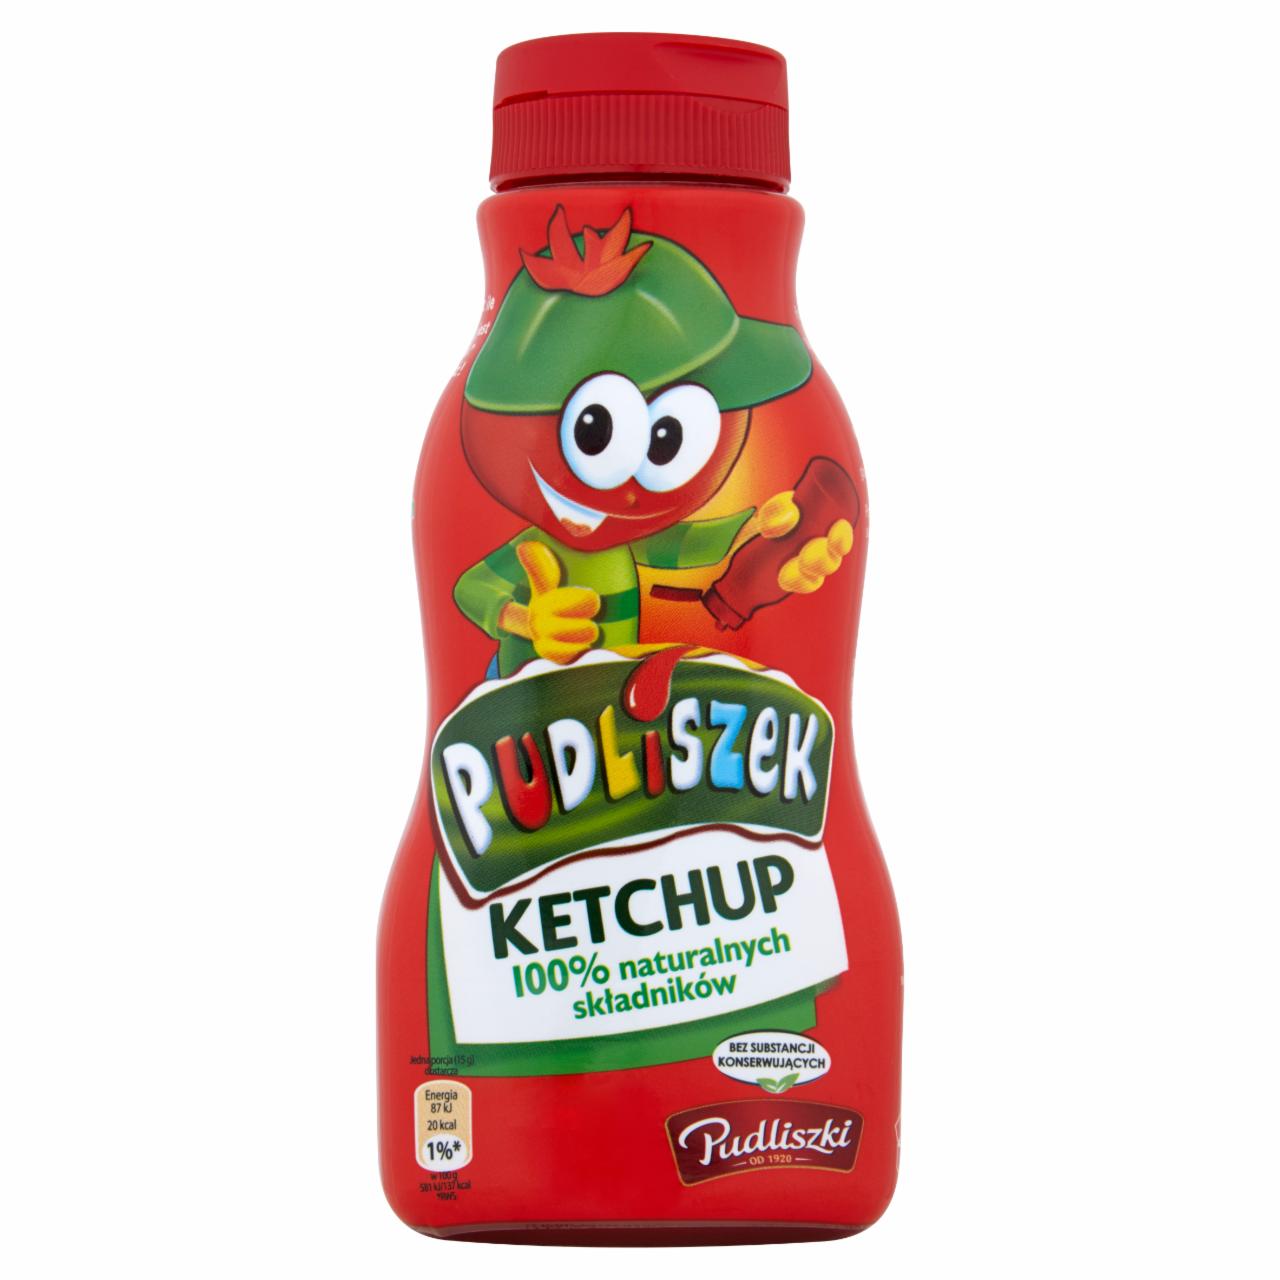 Zdjęcia - Pudliszki Pudliszek Ketchup dla dzieci 320 g